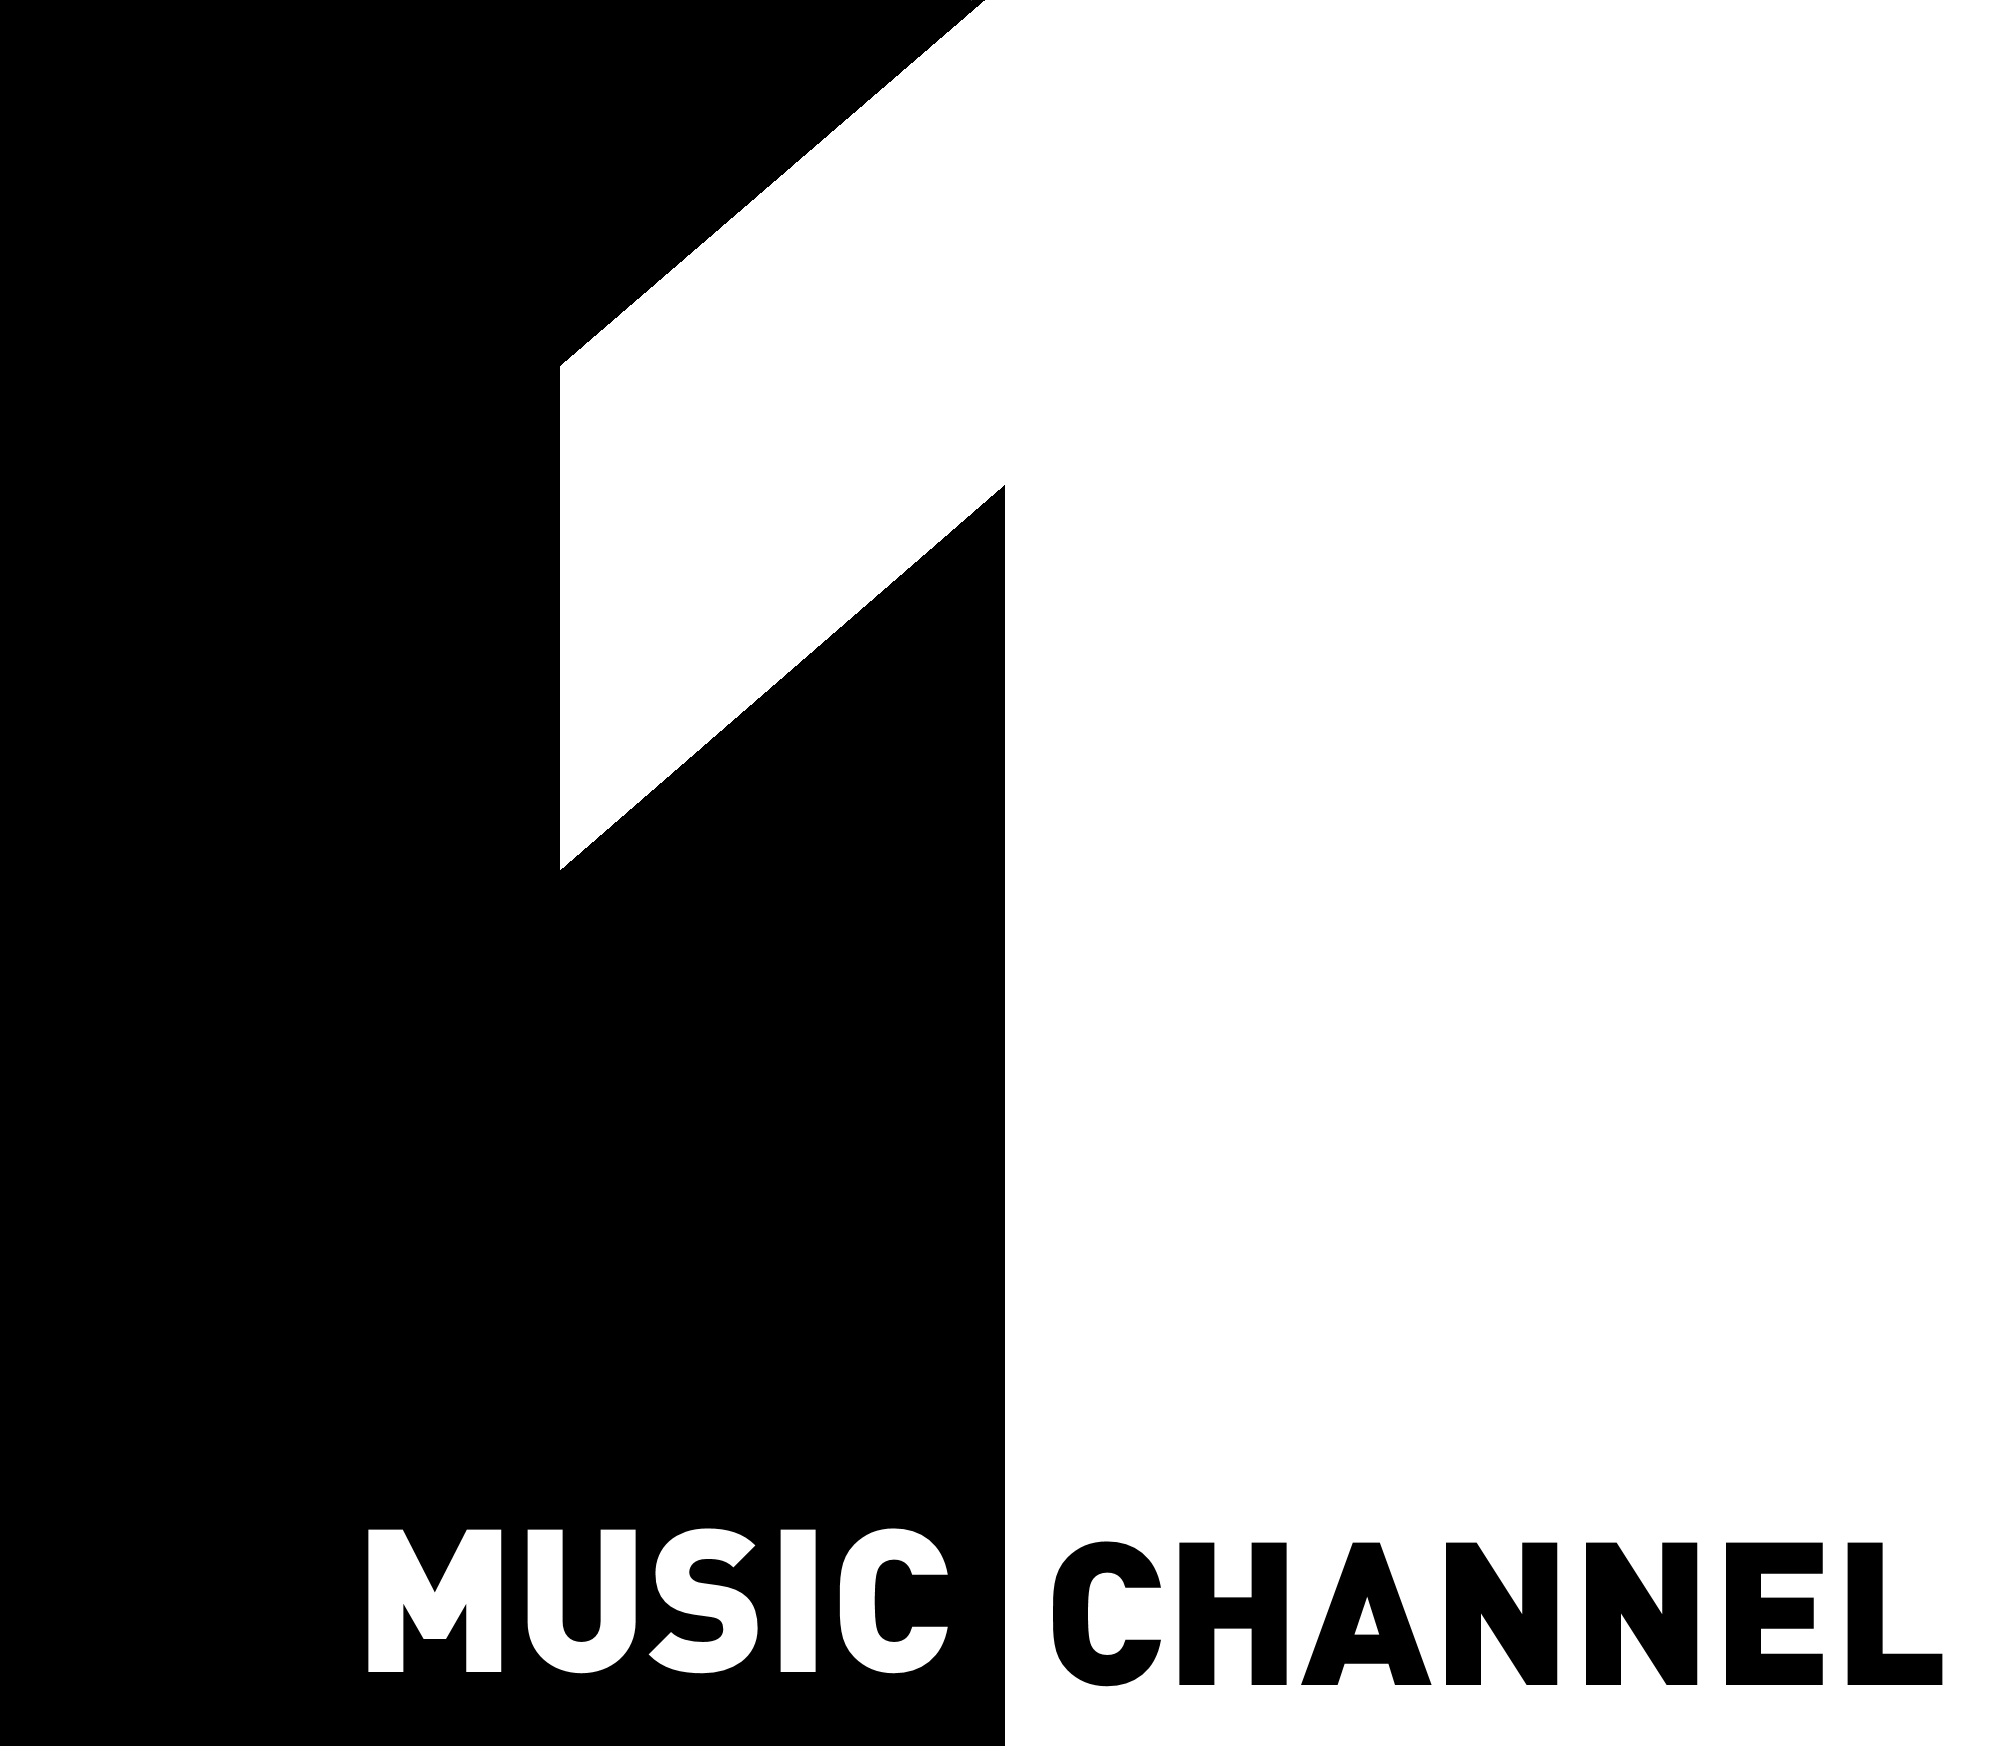 Музыка из 1 11. Music channel 1. Логотип канала первый музыкальный. 1 Music channel Romania. Live Music channel логотип Телеканал.